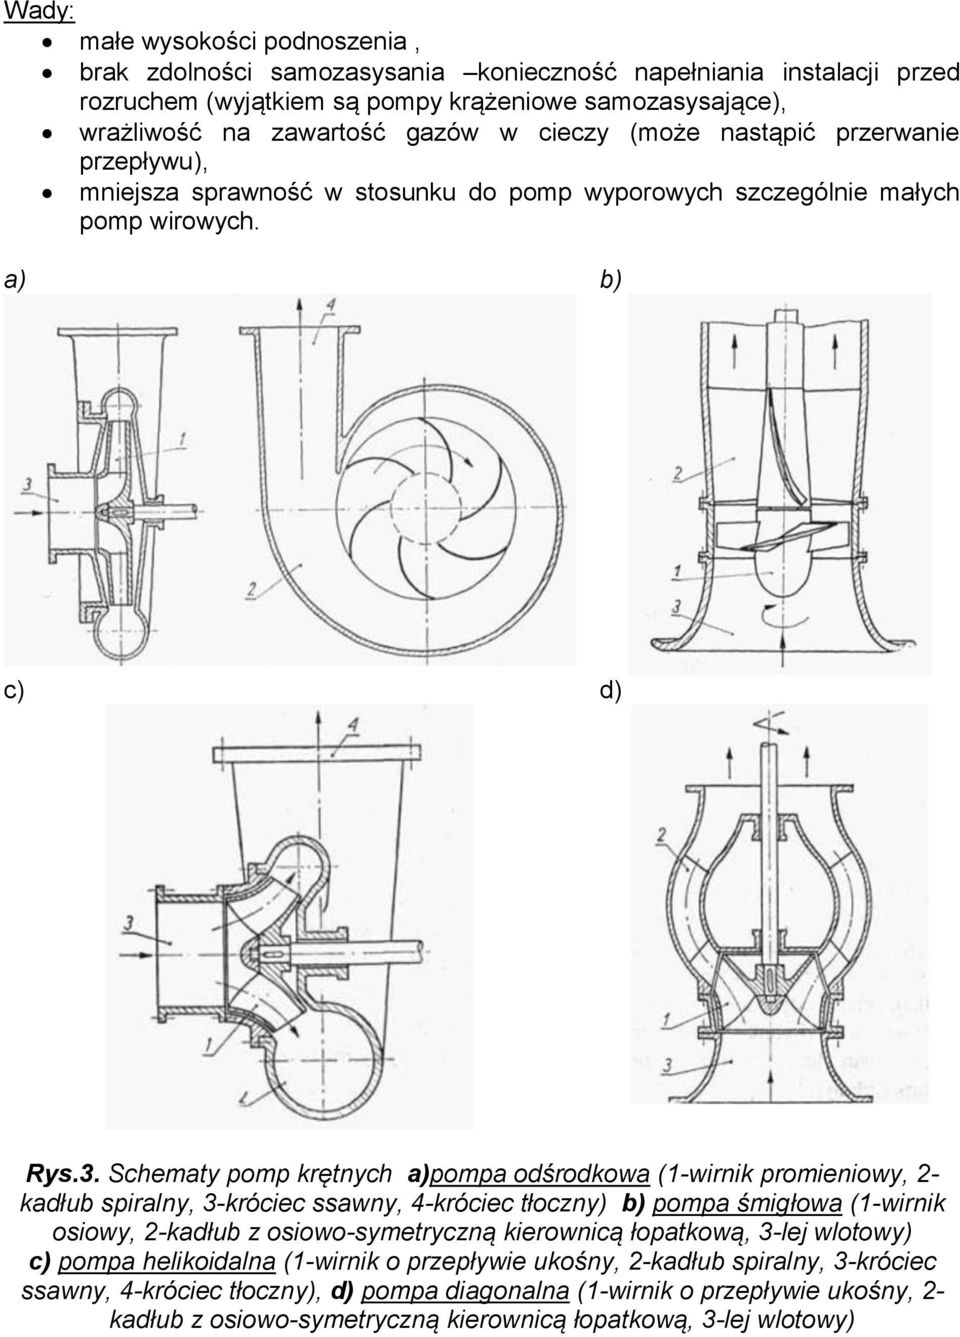 Schematy pomp krętnych a)pompa odśrodkowa (1-wirnik promieniowy, 2- kadłub spiralny, 3-króciec ssawny, 4-króciec tłoczny) b) pompa śmigłowa (1-wirnik osiowy, 2-kadłub z osiowo-symetryczną kierownicą